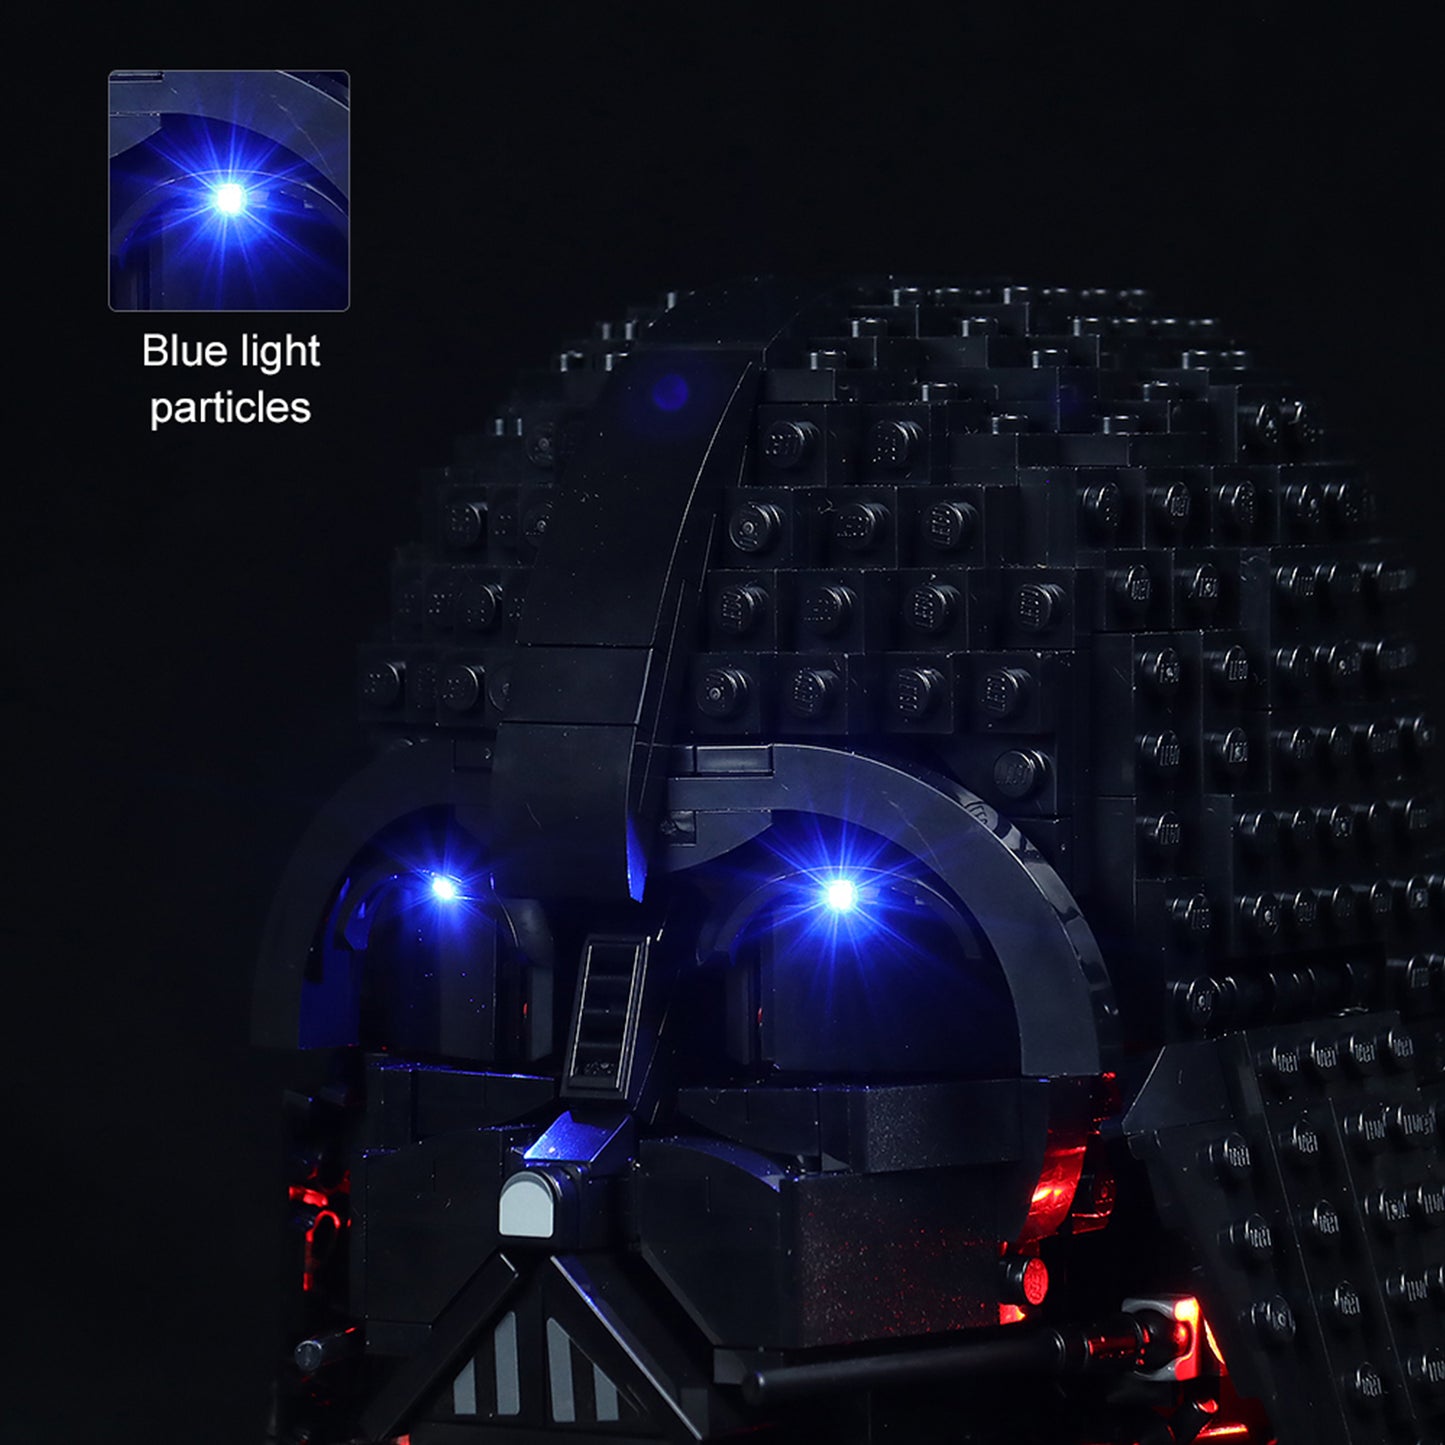 Light kit for Lego Star Wars 75304 Darth Vader Helmet